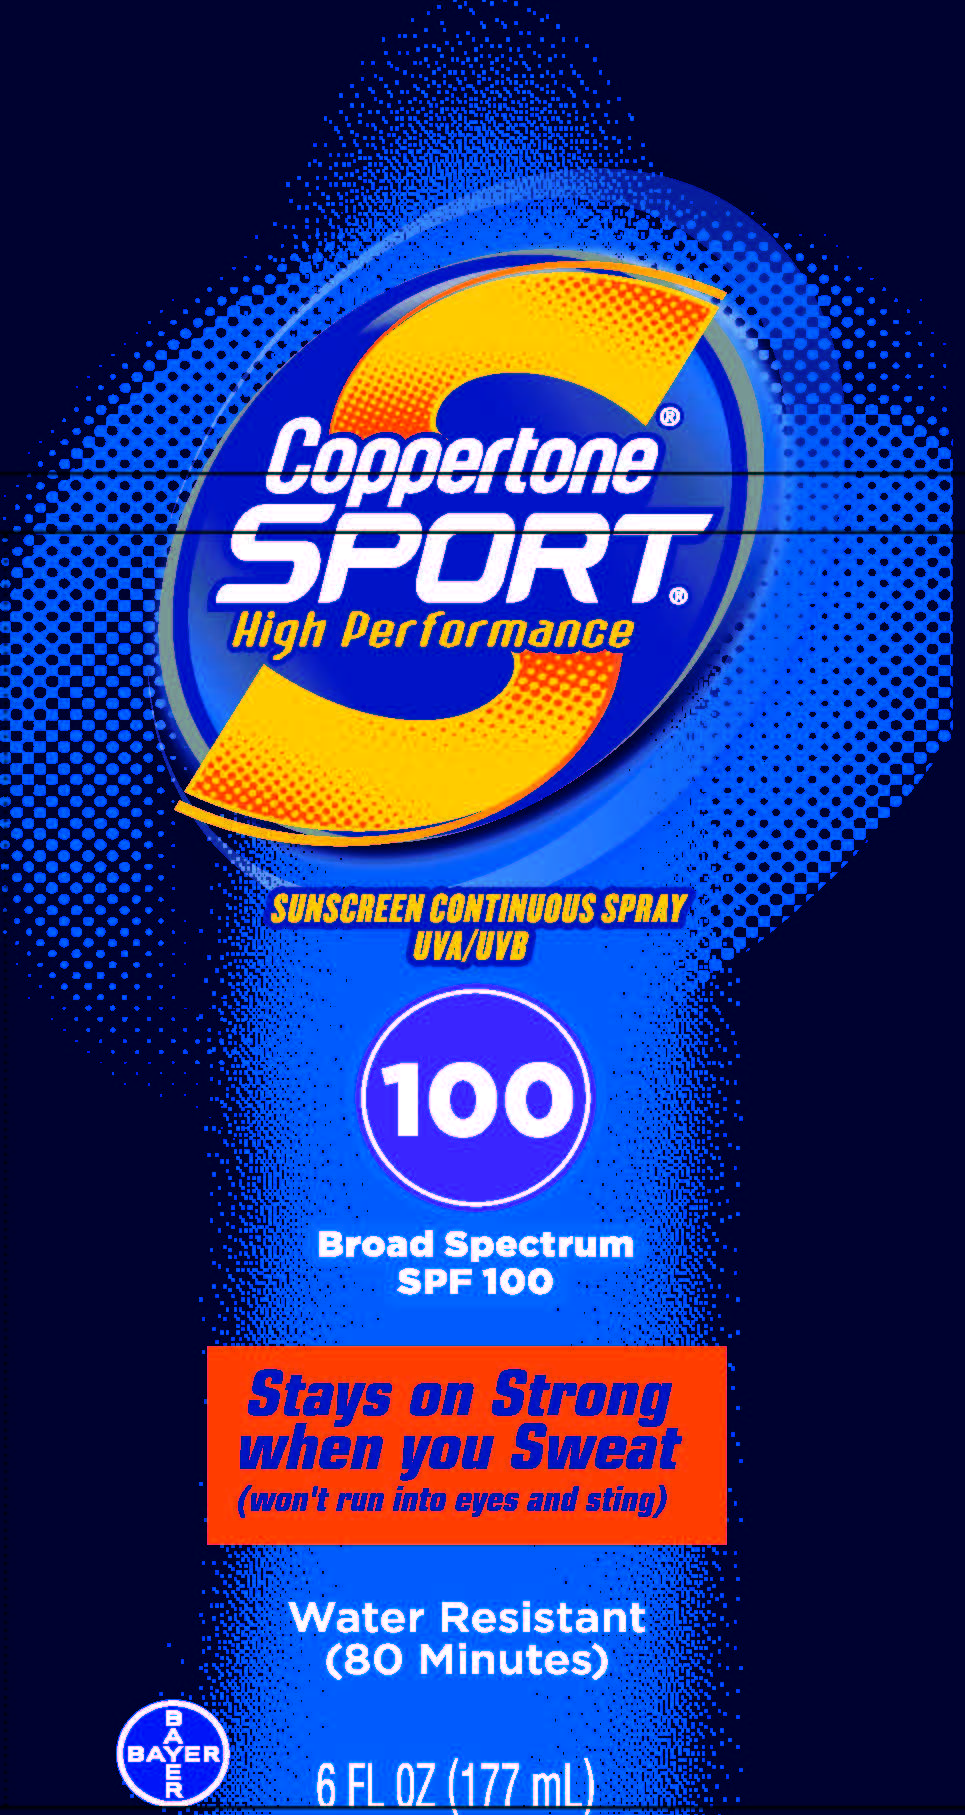 Coppertone Sport SPF 100 image